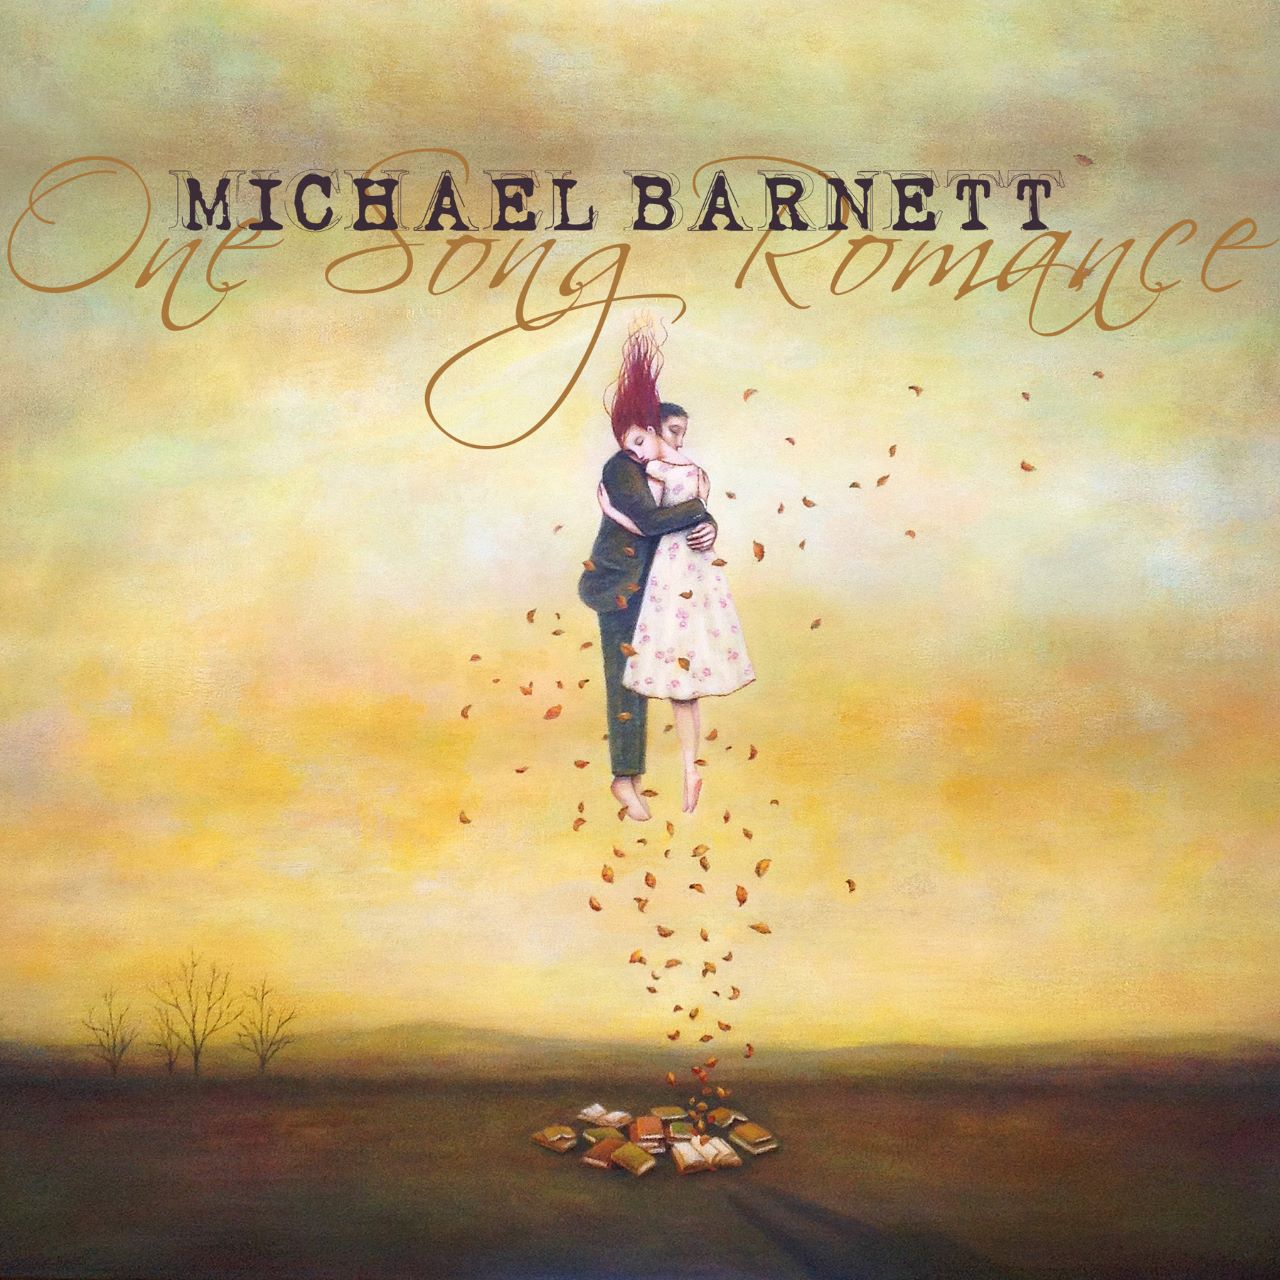 Michael Barnett – “One Song Romance” cover album